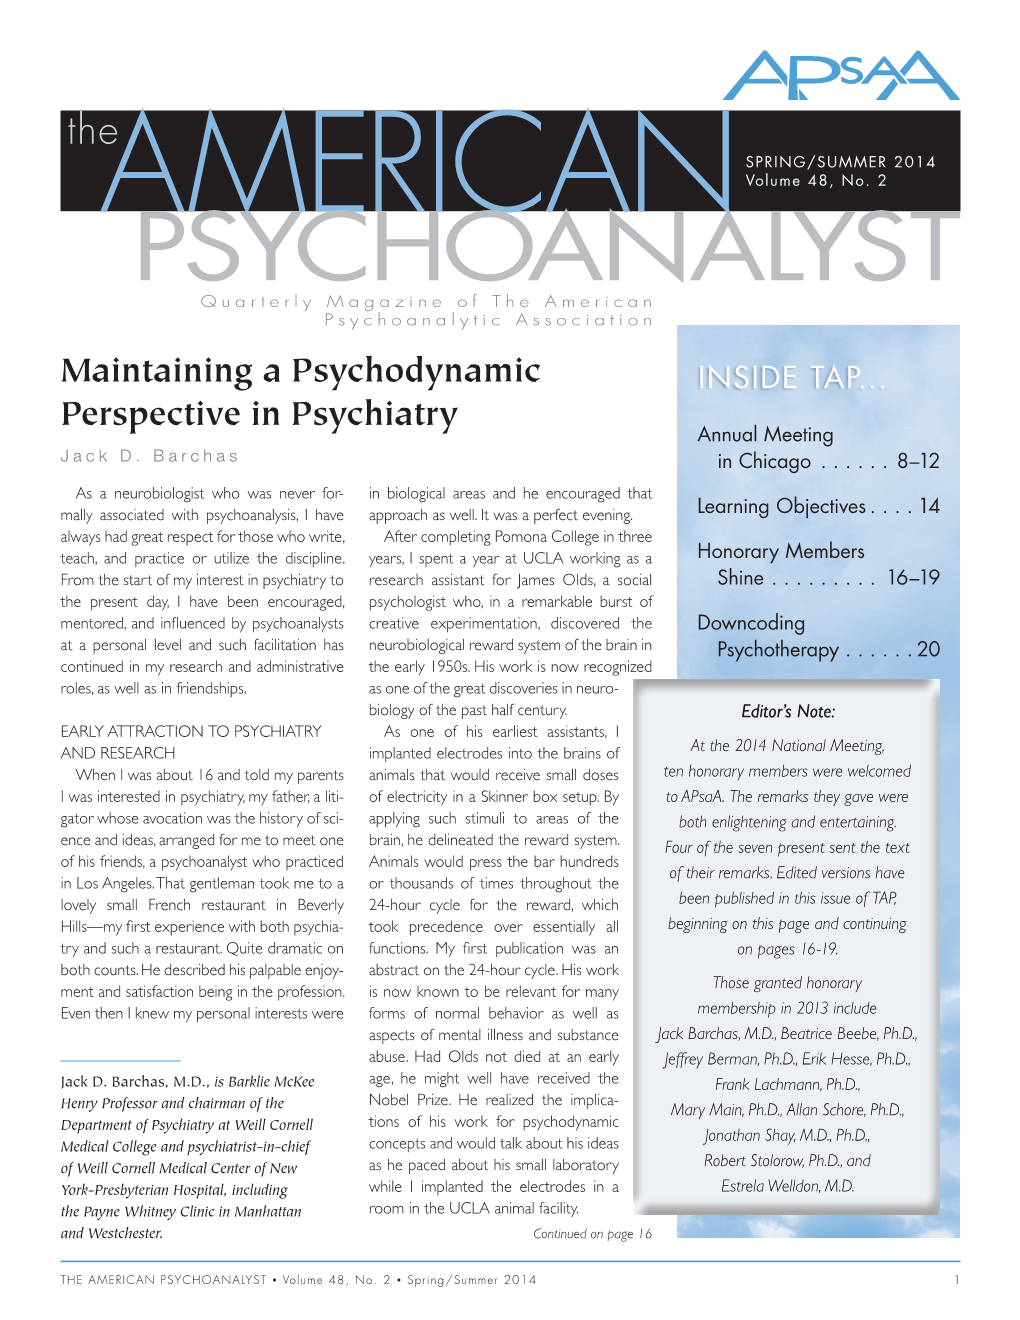 PSYCHOANALYST Quarterly Magazine of the American Psychoanalytic Association